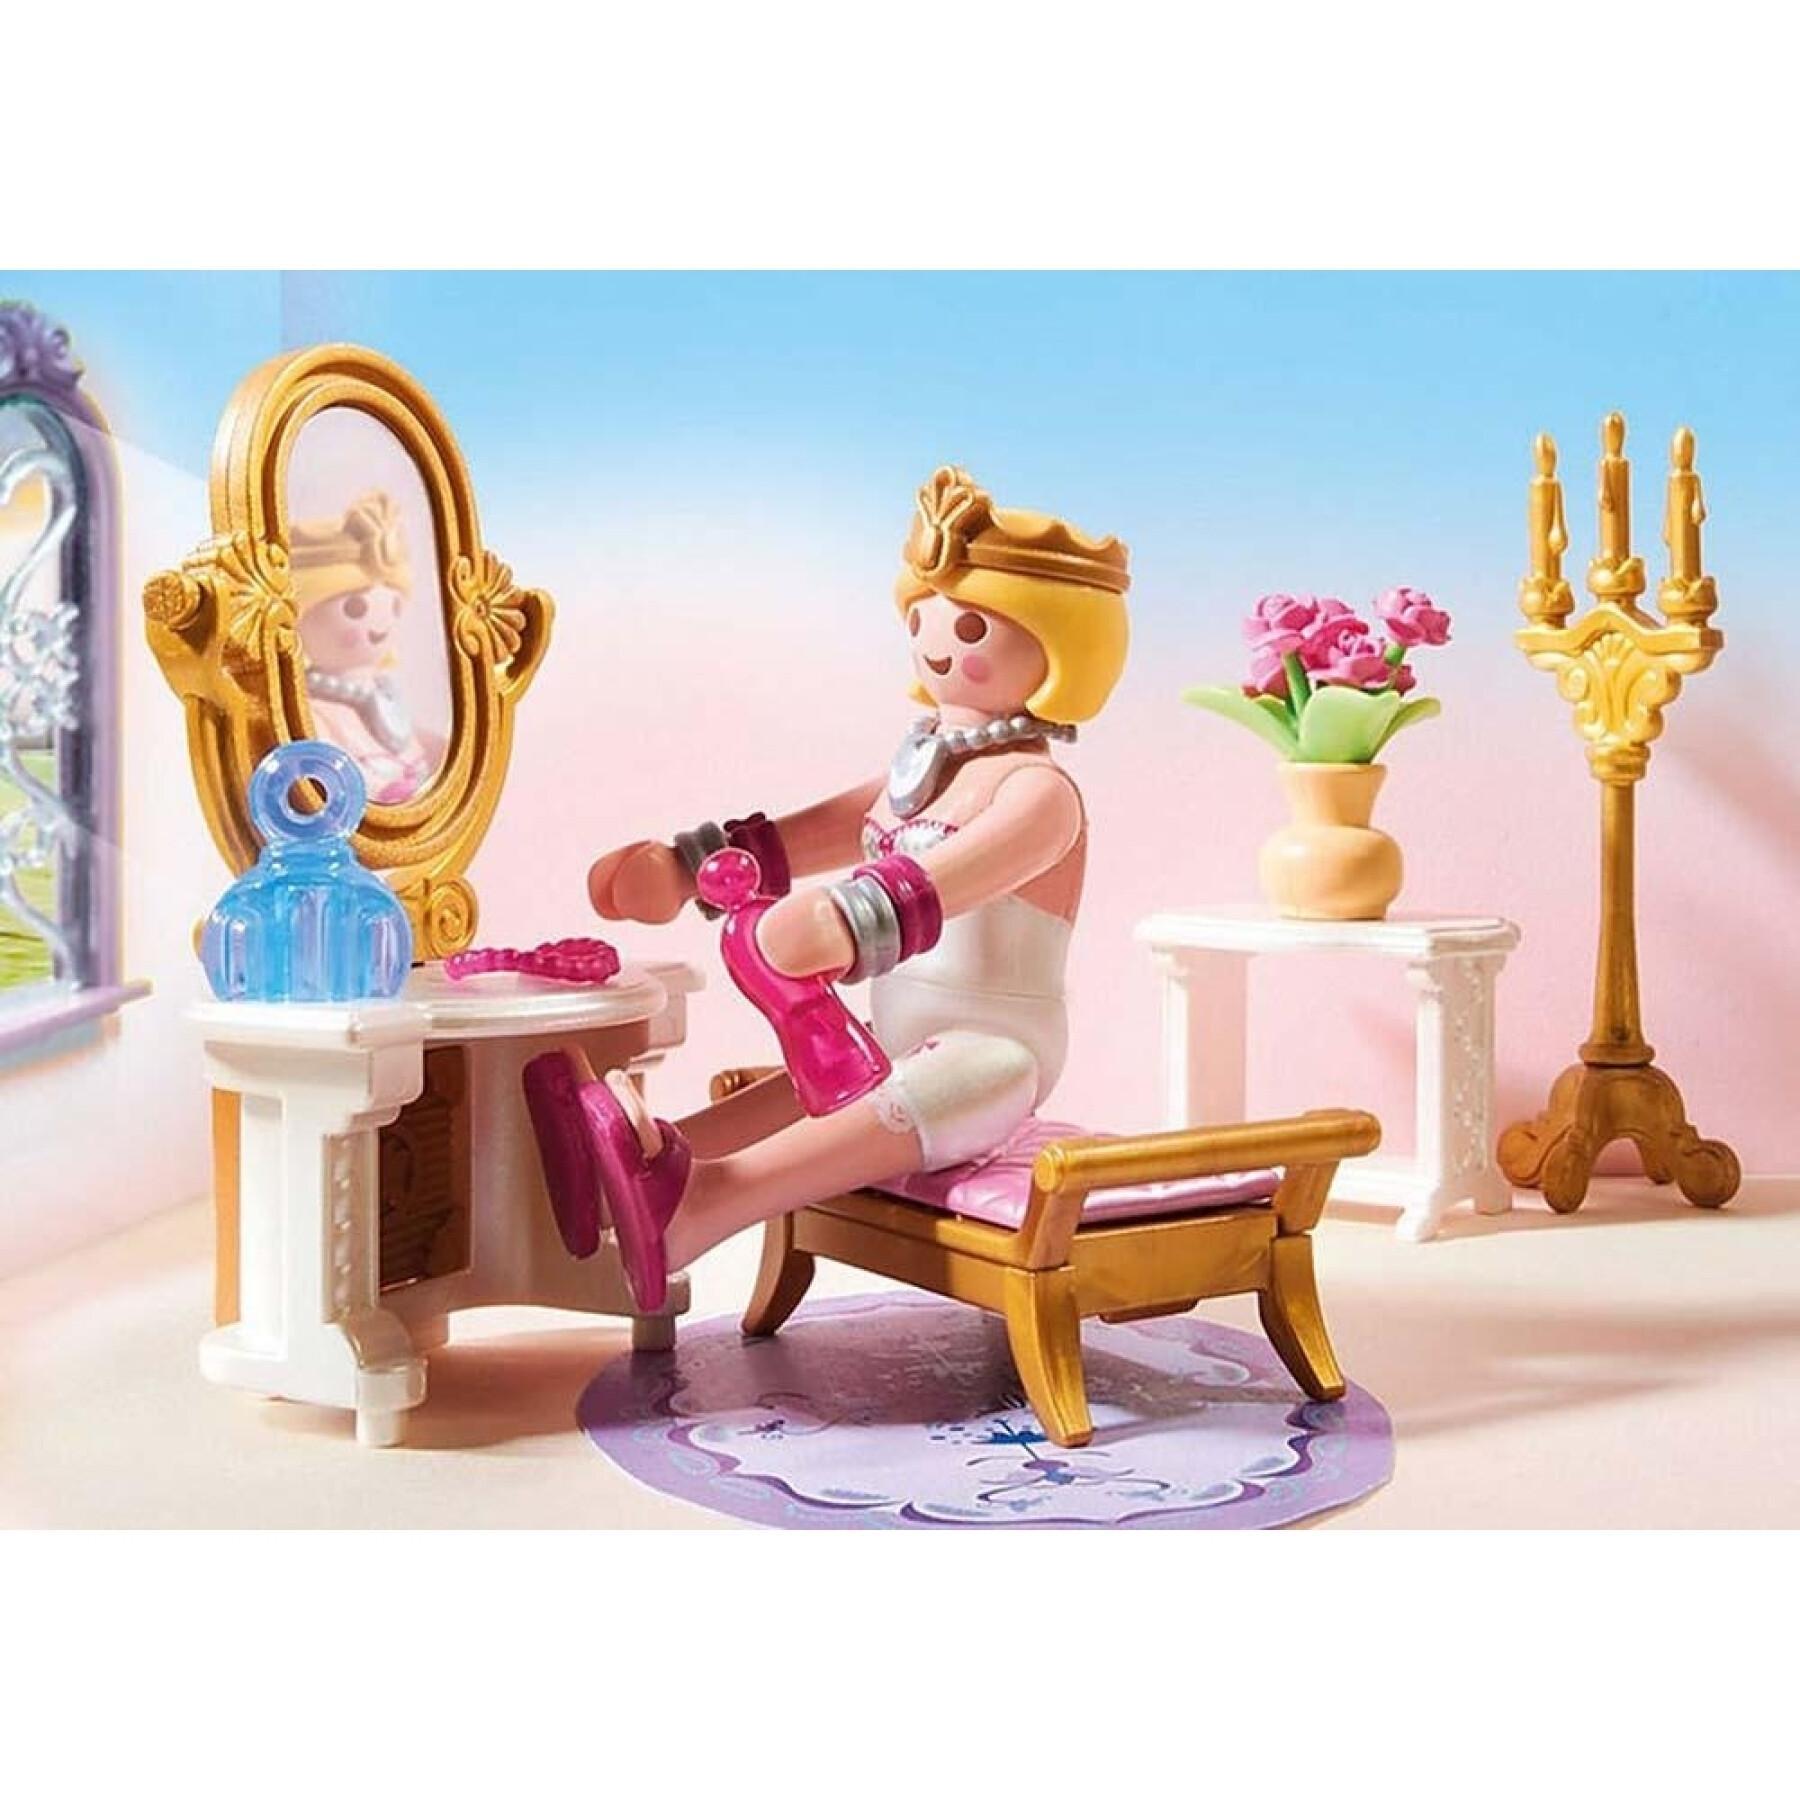 Prinsessor kungliga sovrum Playmobil